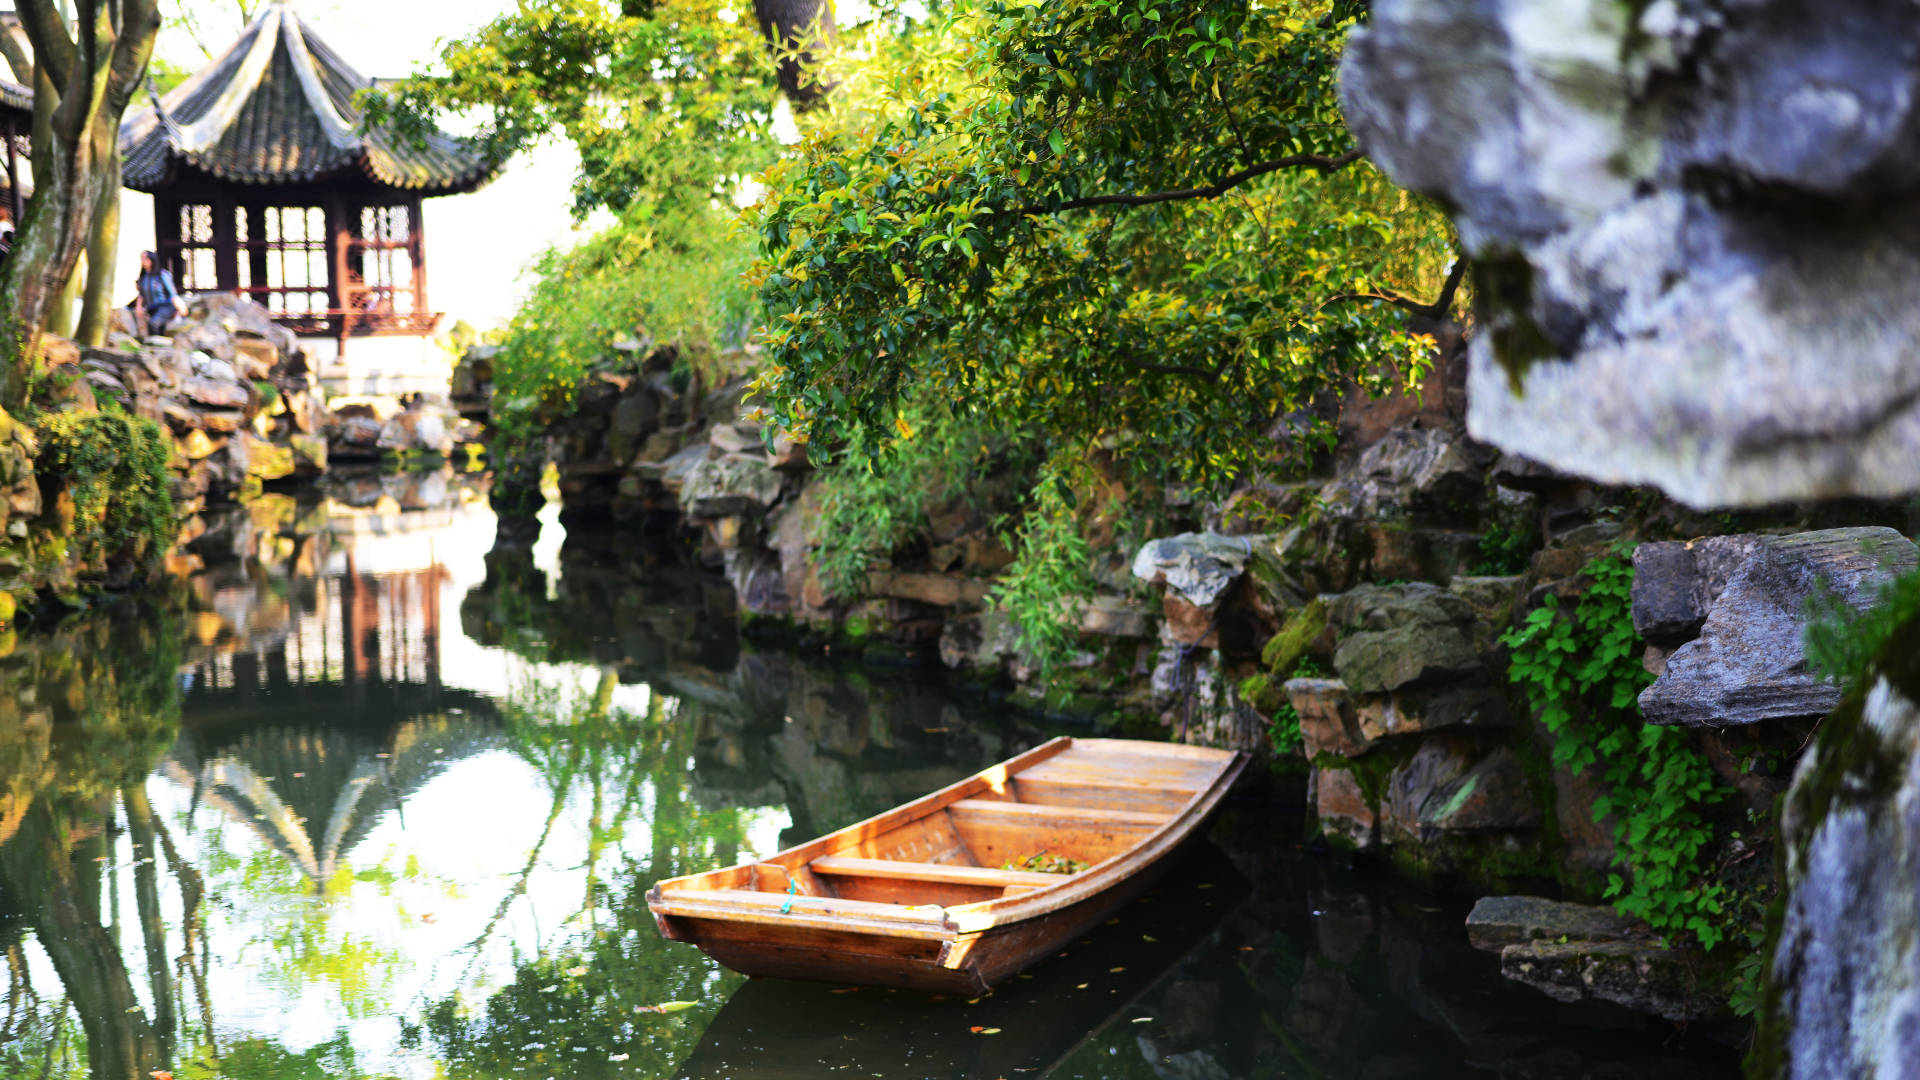 Suzhouboot Im Garten Wallpaper